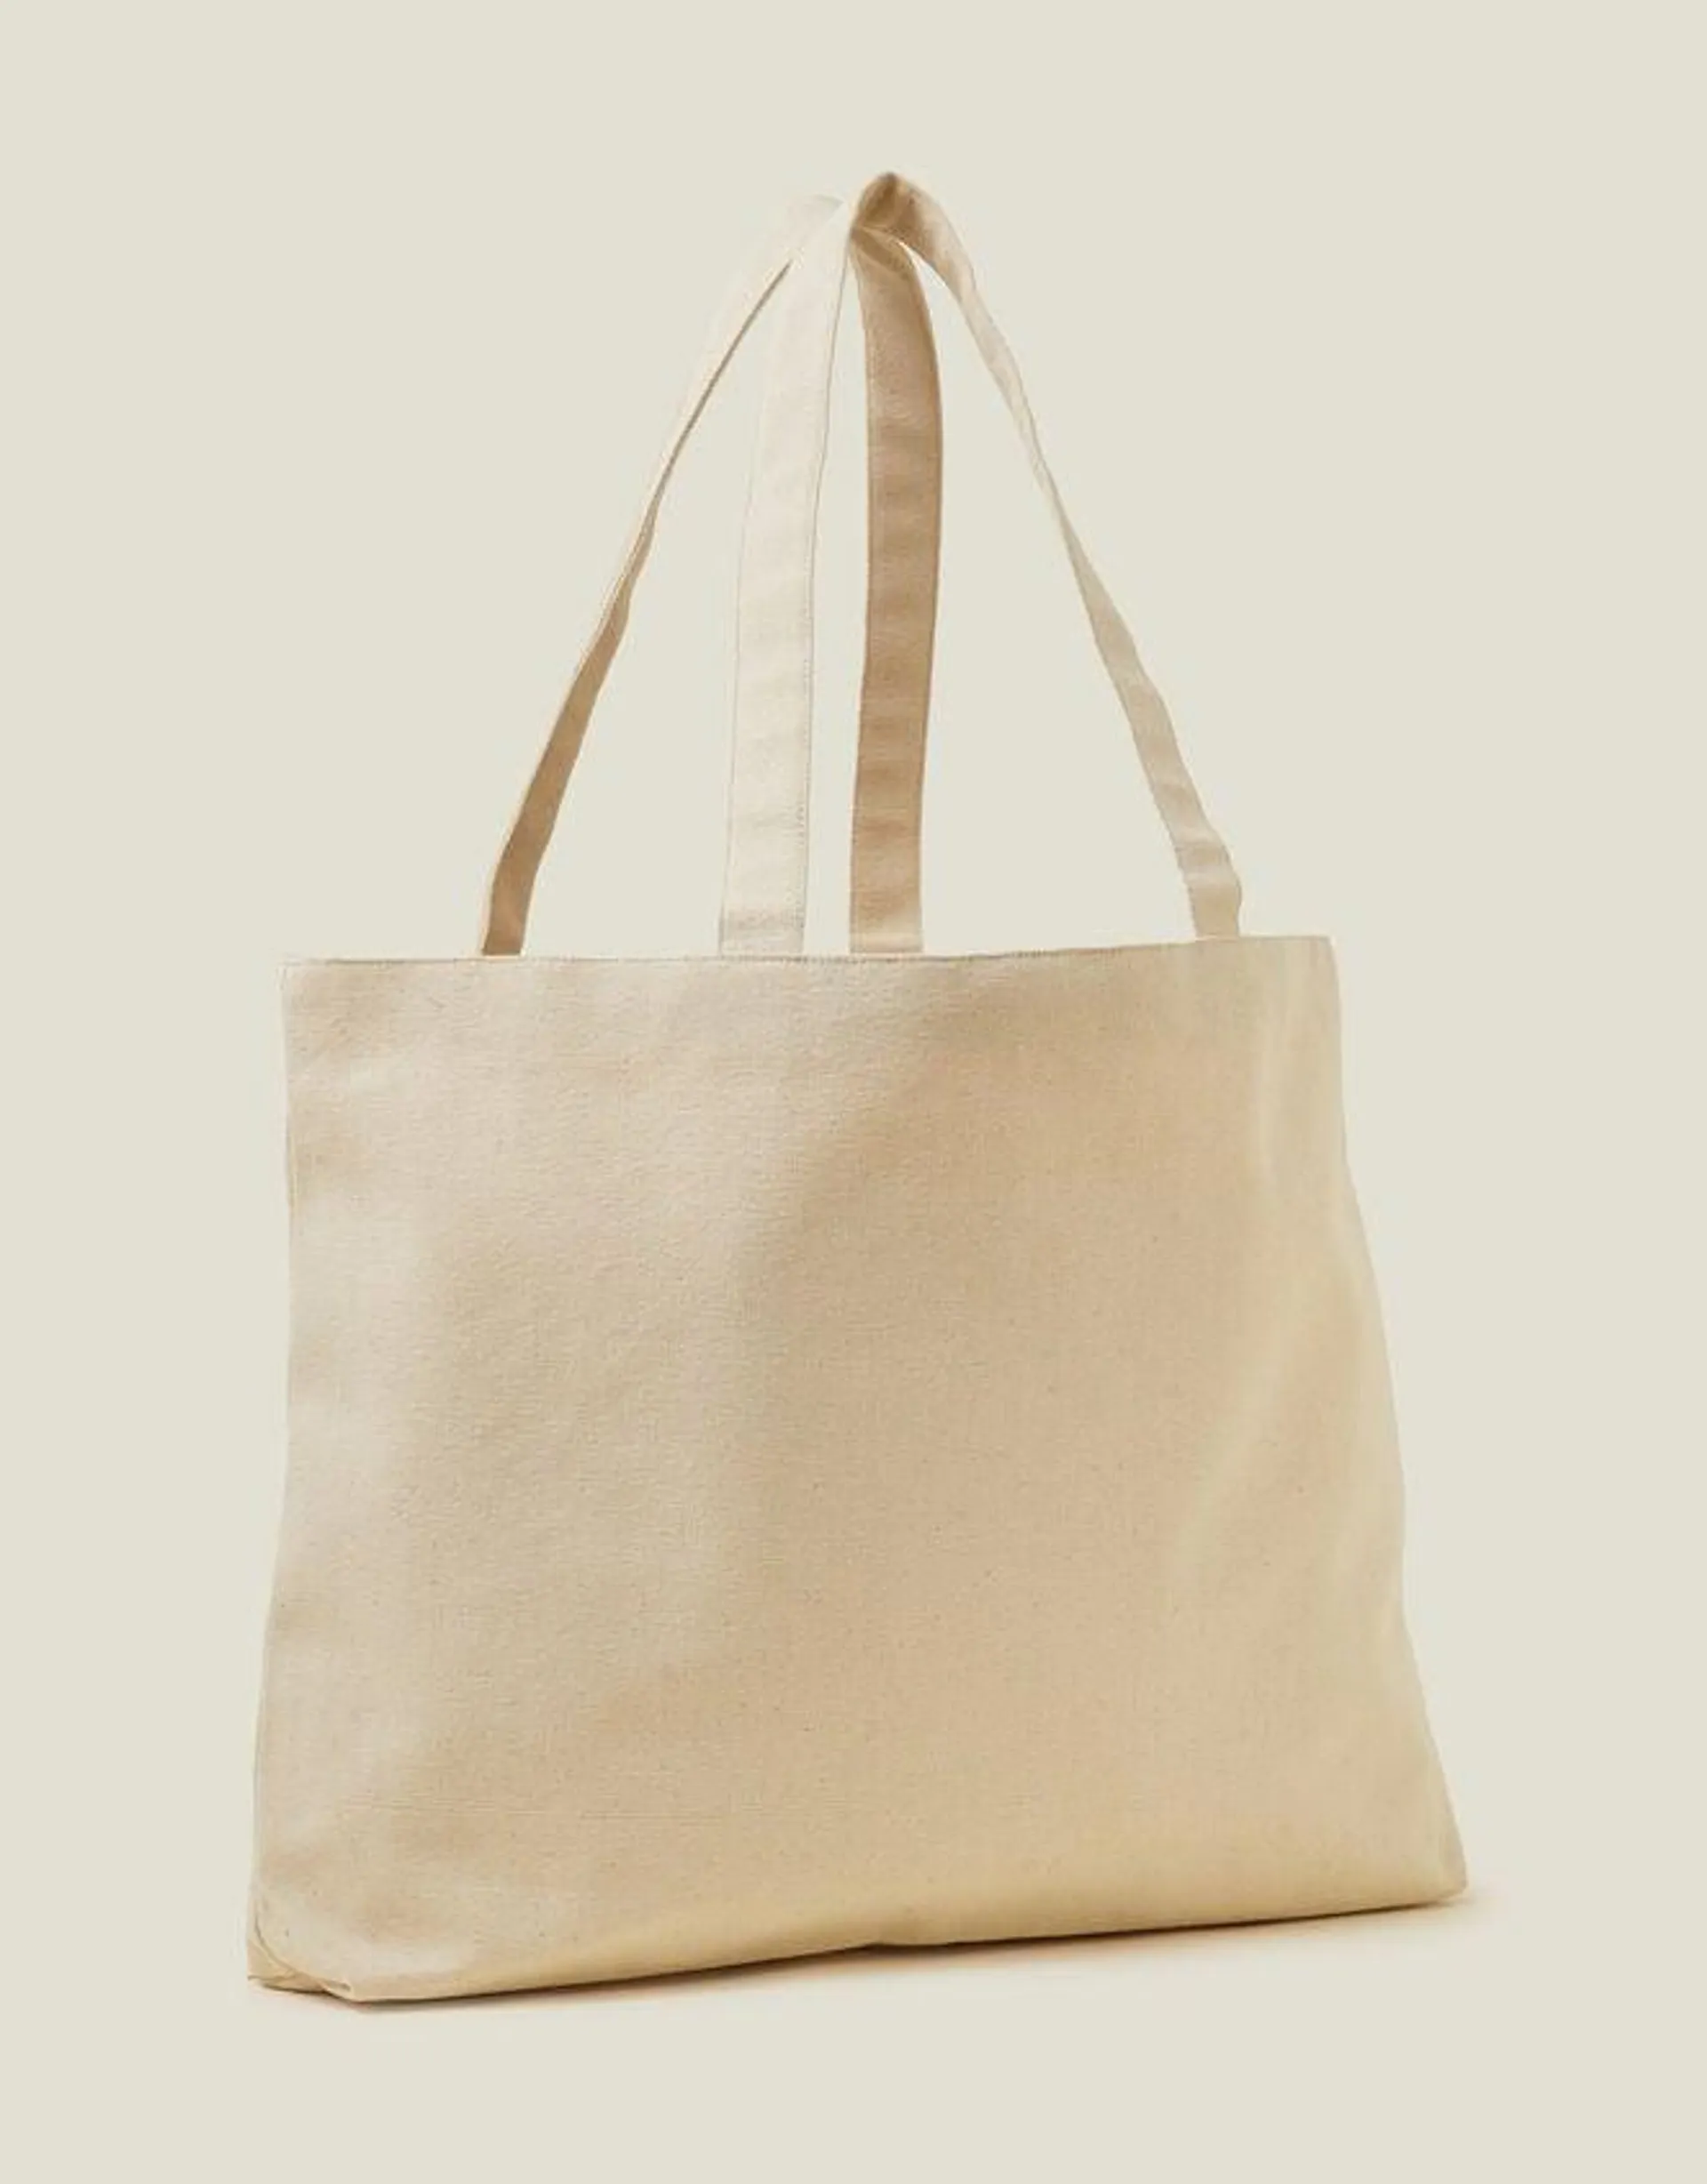 Embroidered Shopper Bag